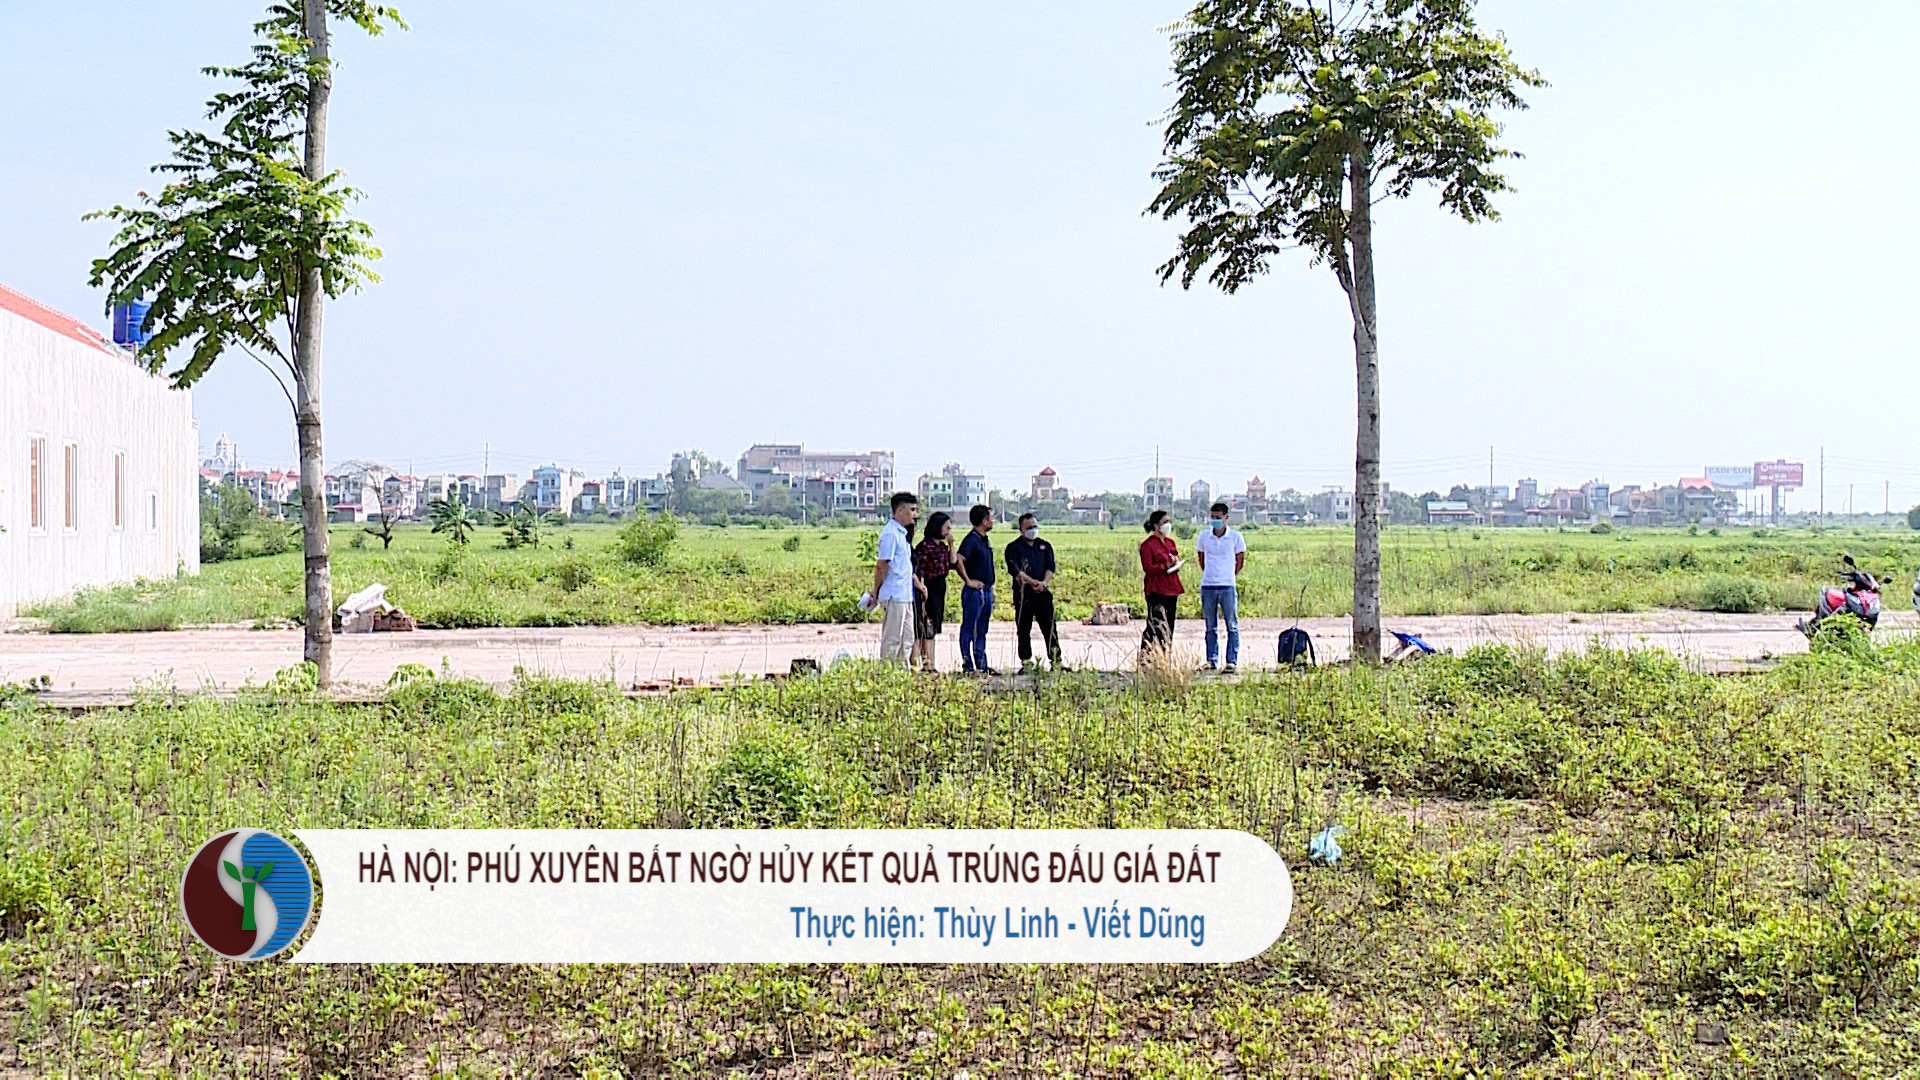  Hà Nội: Huyện Phú Xuyên bất ngờ hủy kết quả trúng đấu giá đất 